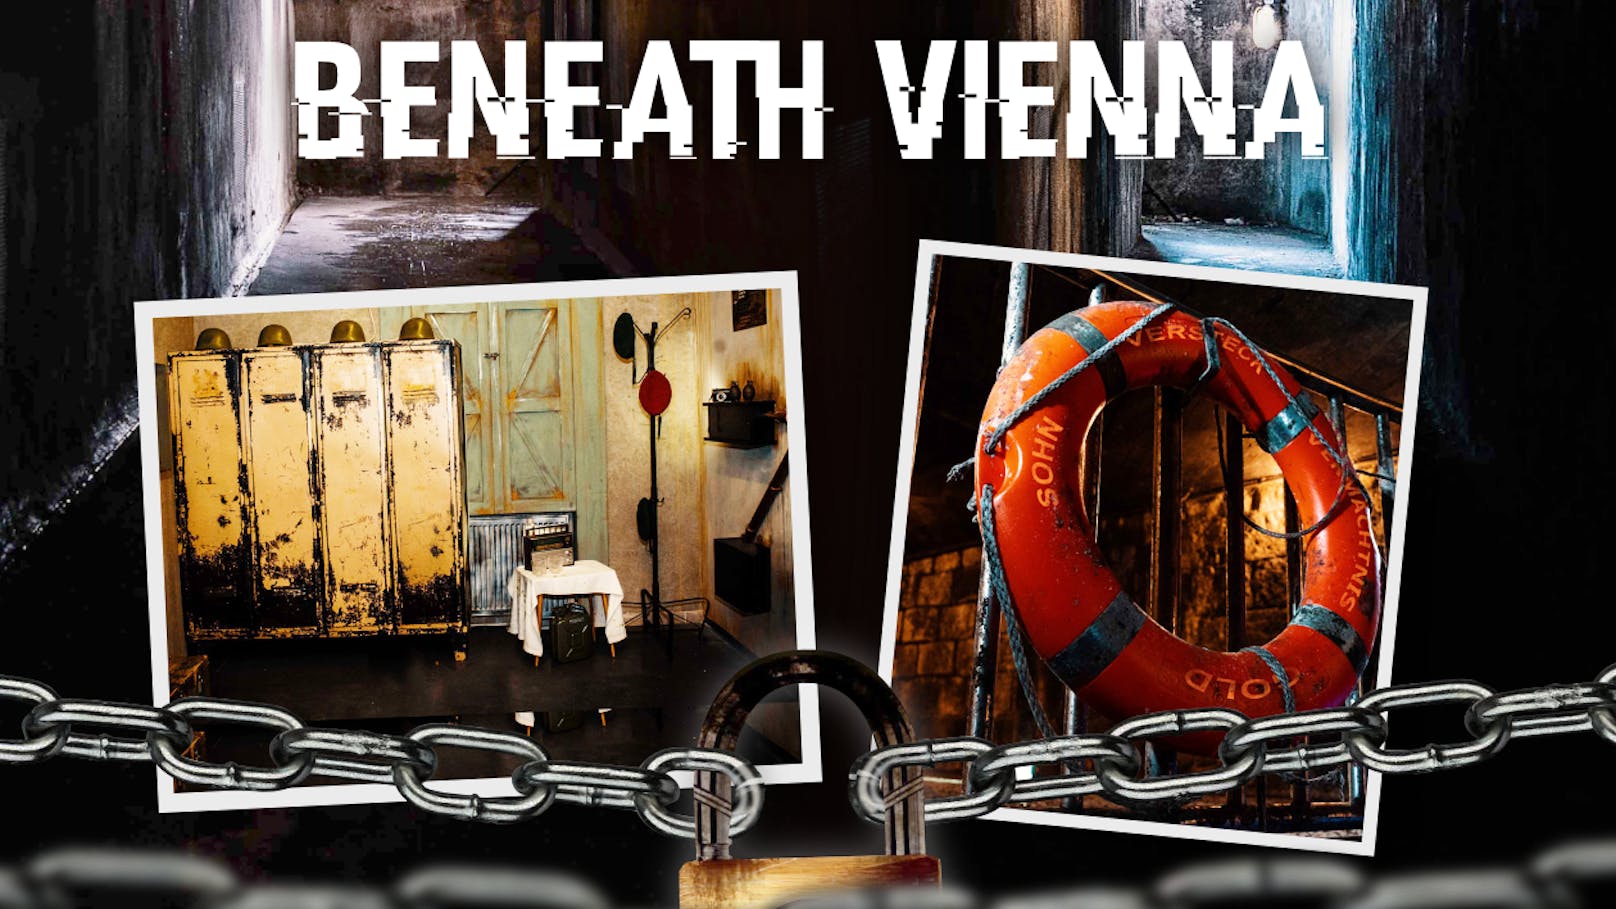 Die Crime Runners haben mit "Beneath Vienna" ein neues Online-Game am Start.